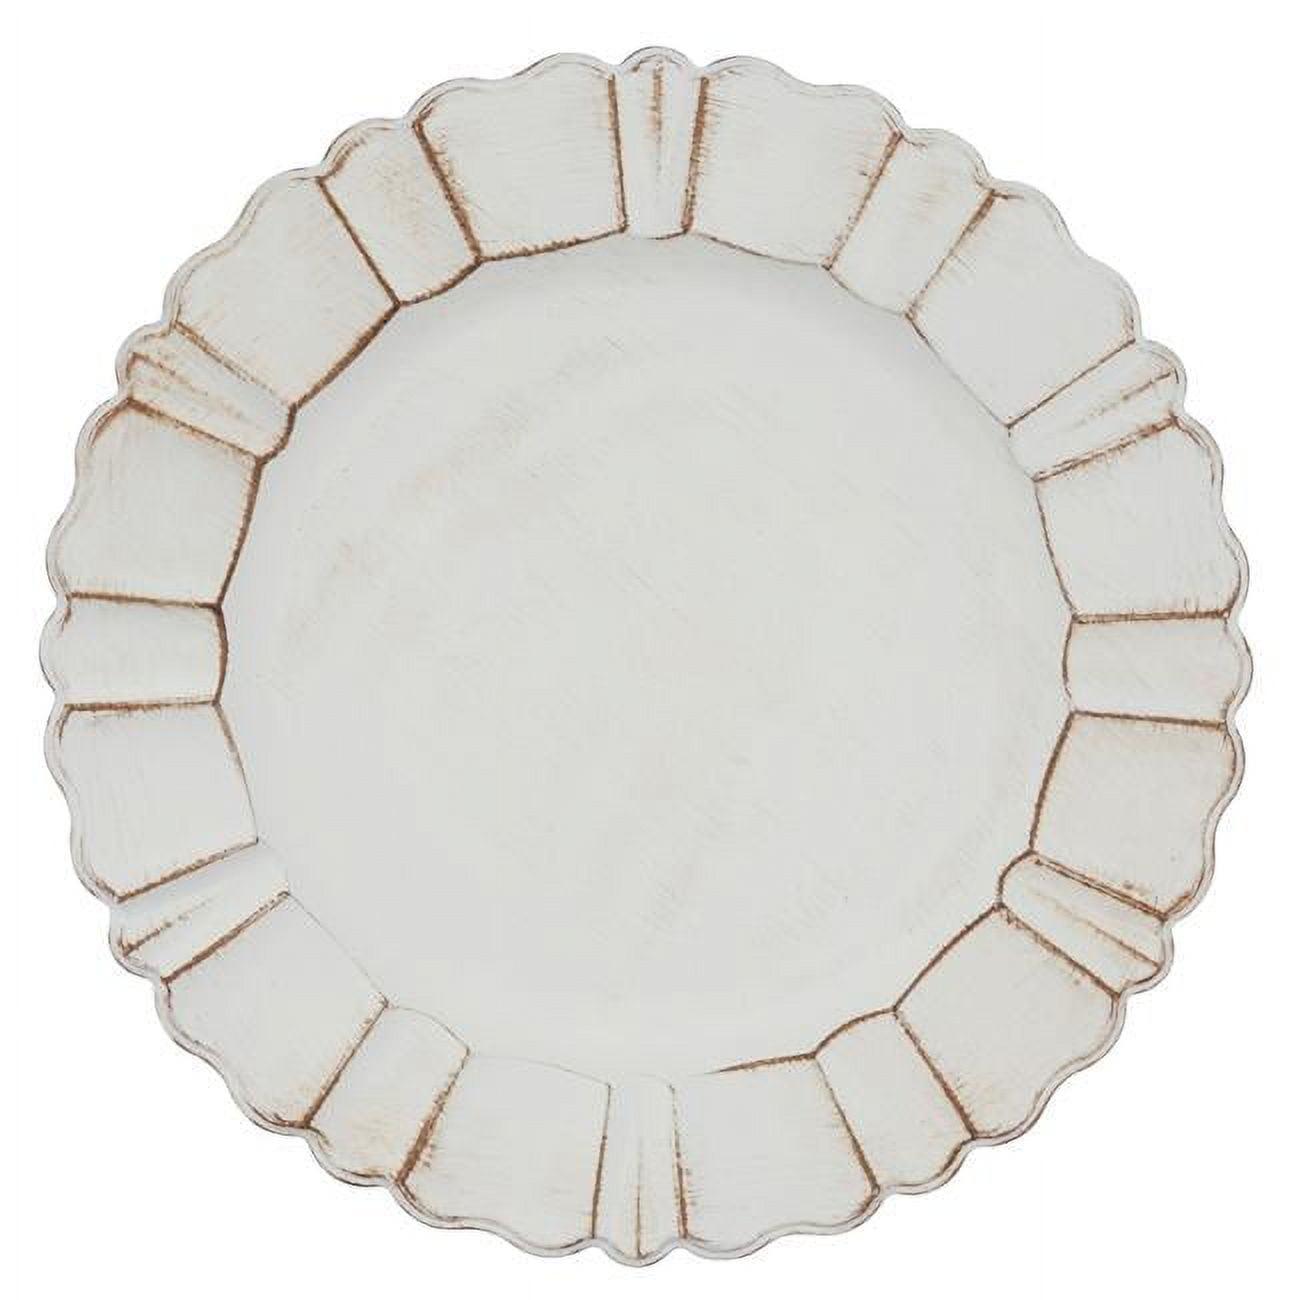 Elegant Ivory Scalloped Ruffled 13" Charger Plates, Set of 4